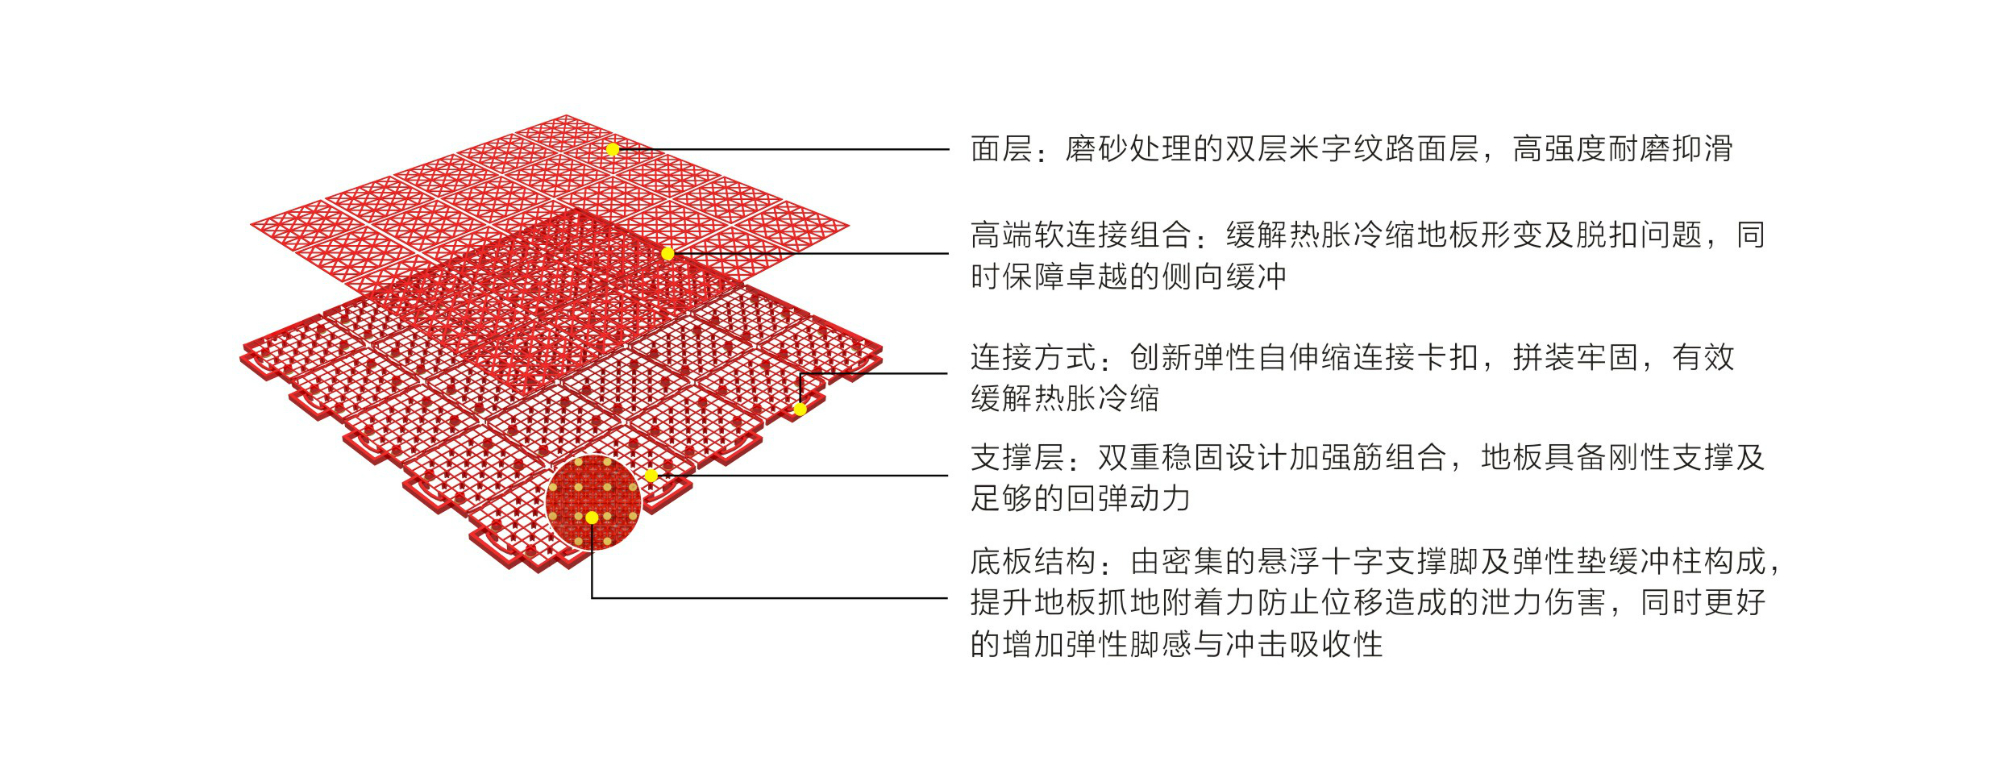 英利奥弹性软连接一代悬浮式拼装地板-结构图